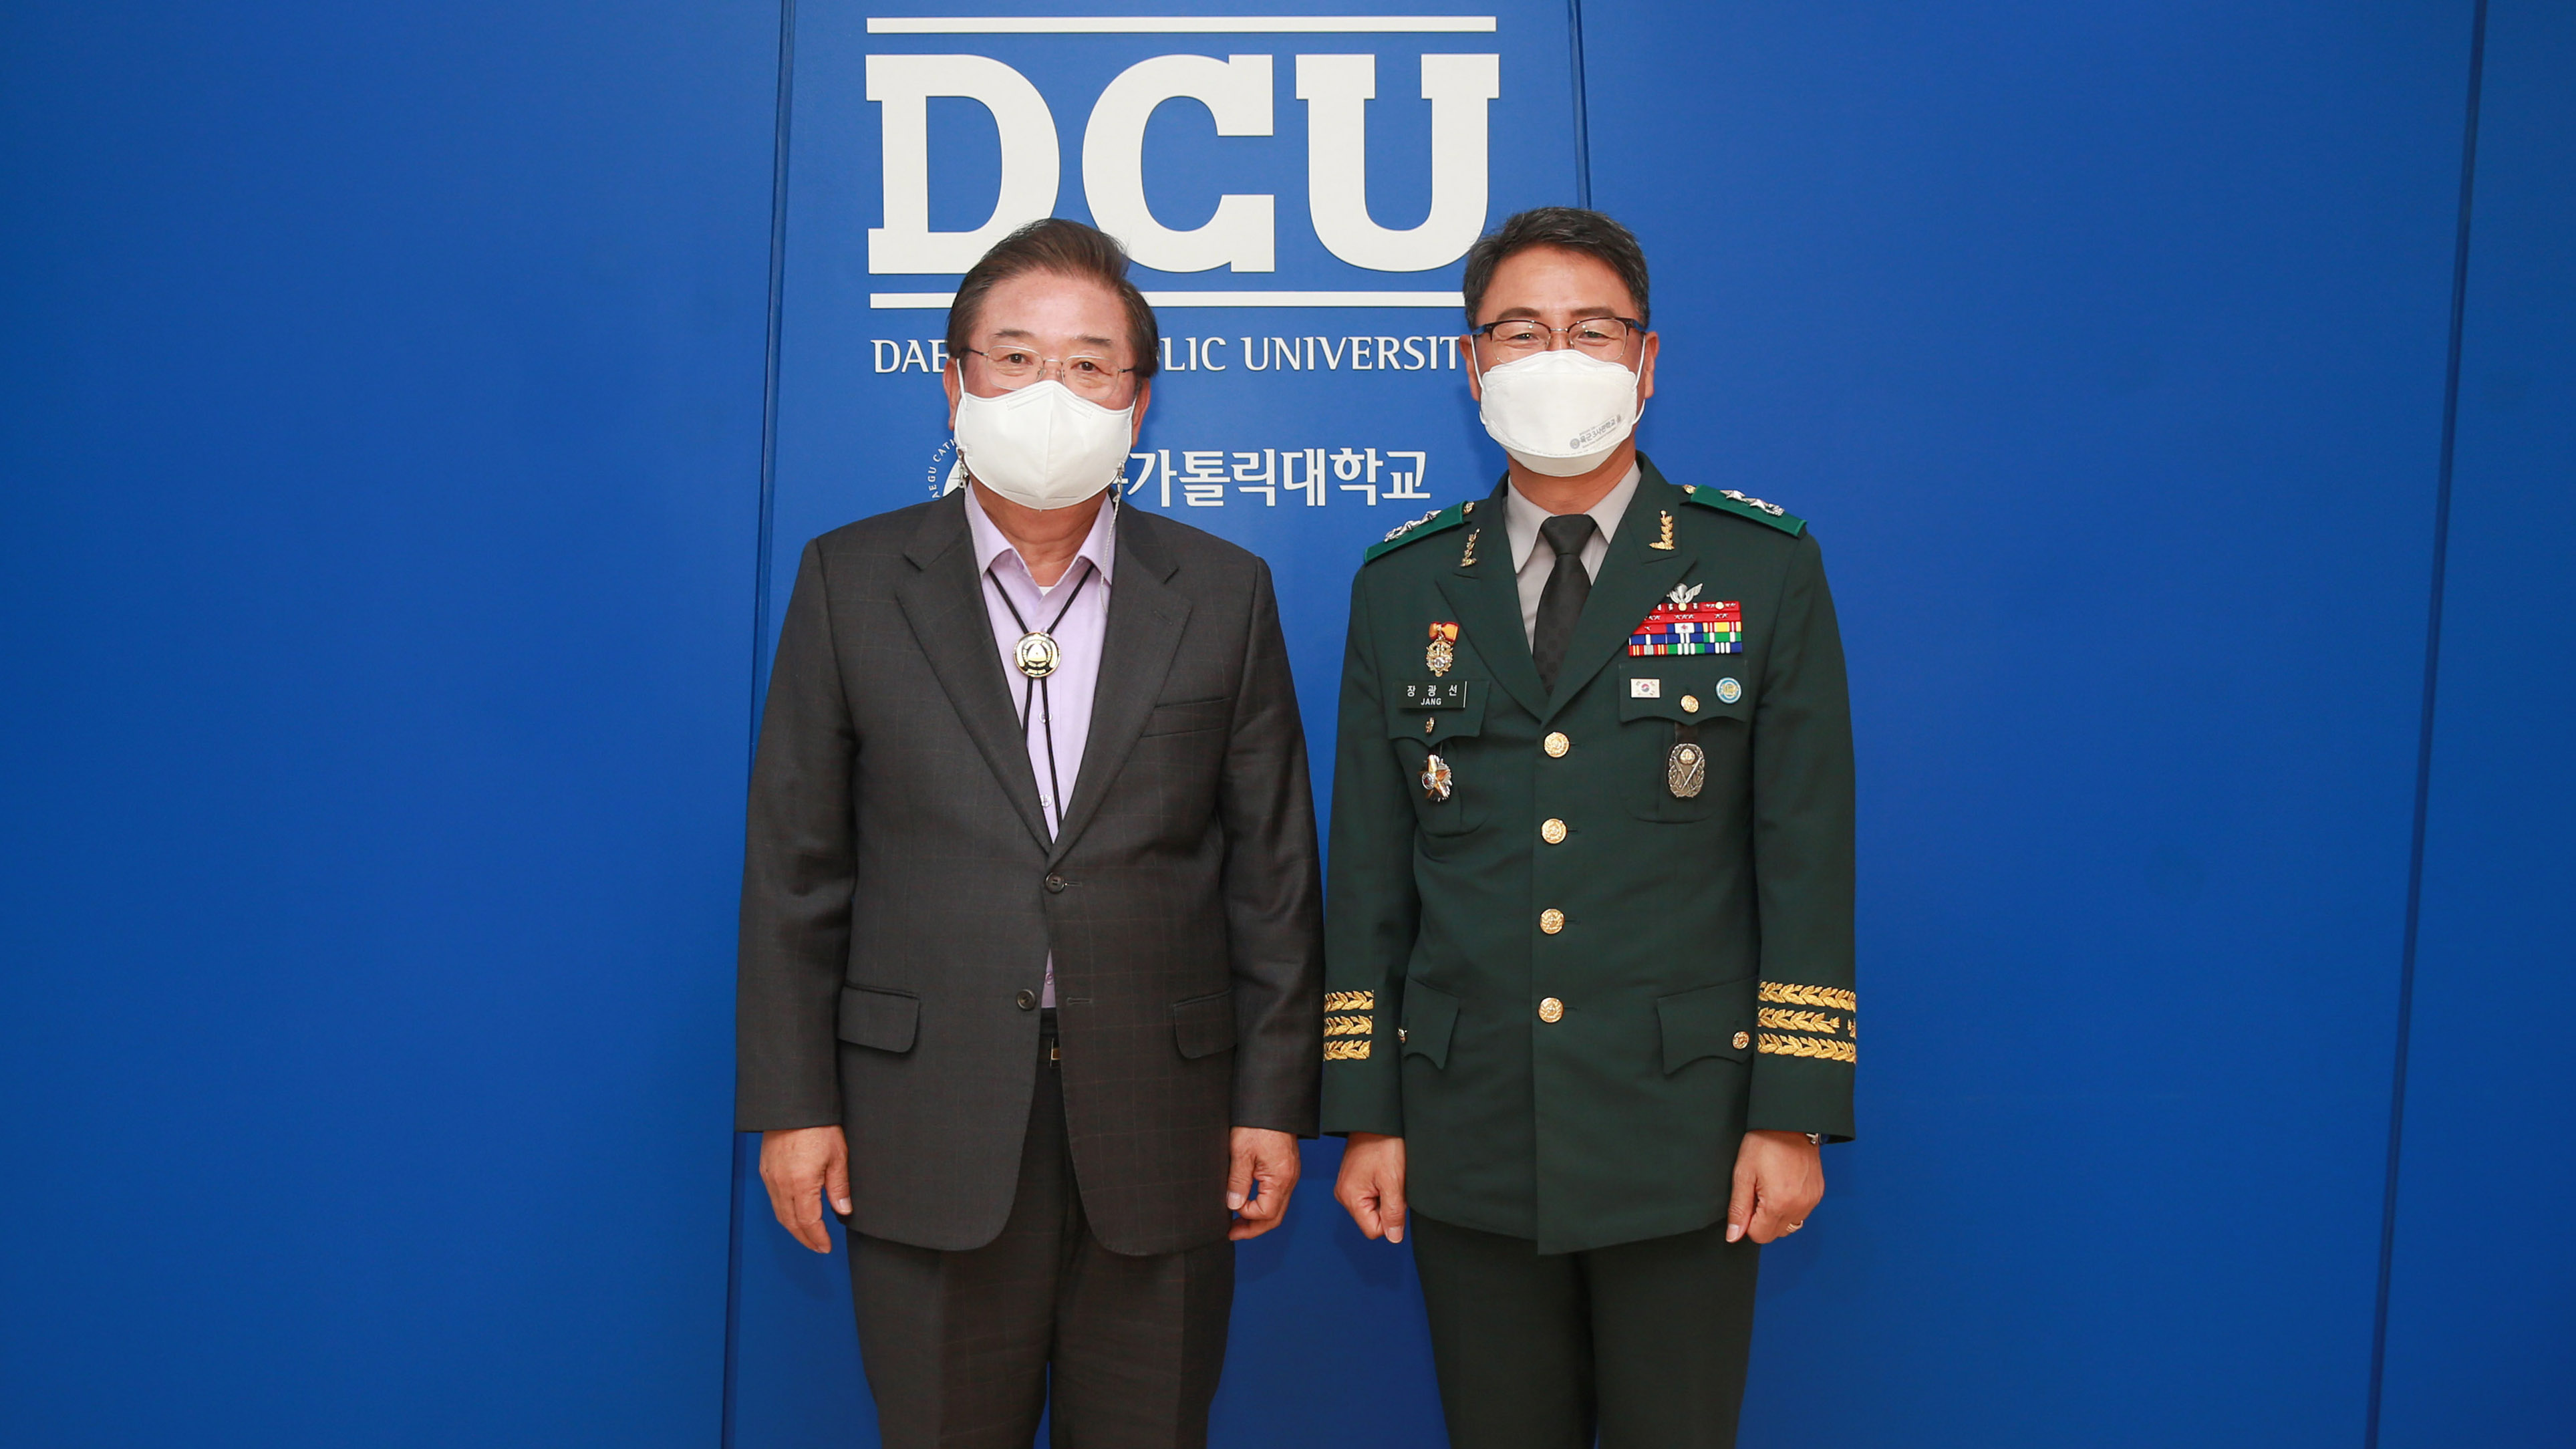 장광선 육군3사관학교장과 우동기 총장(오른쪽)이 기념사진을 촬영하고 있다.